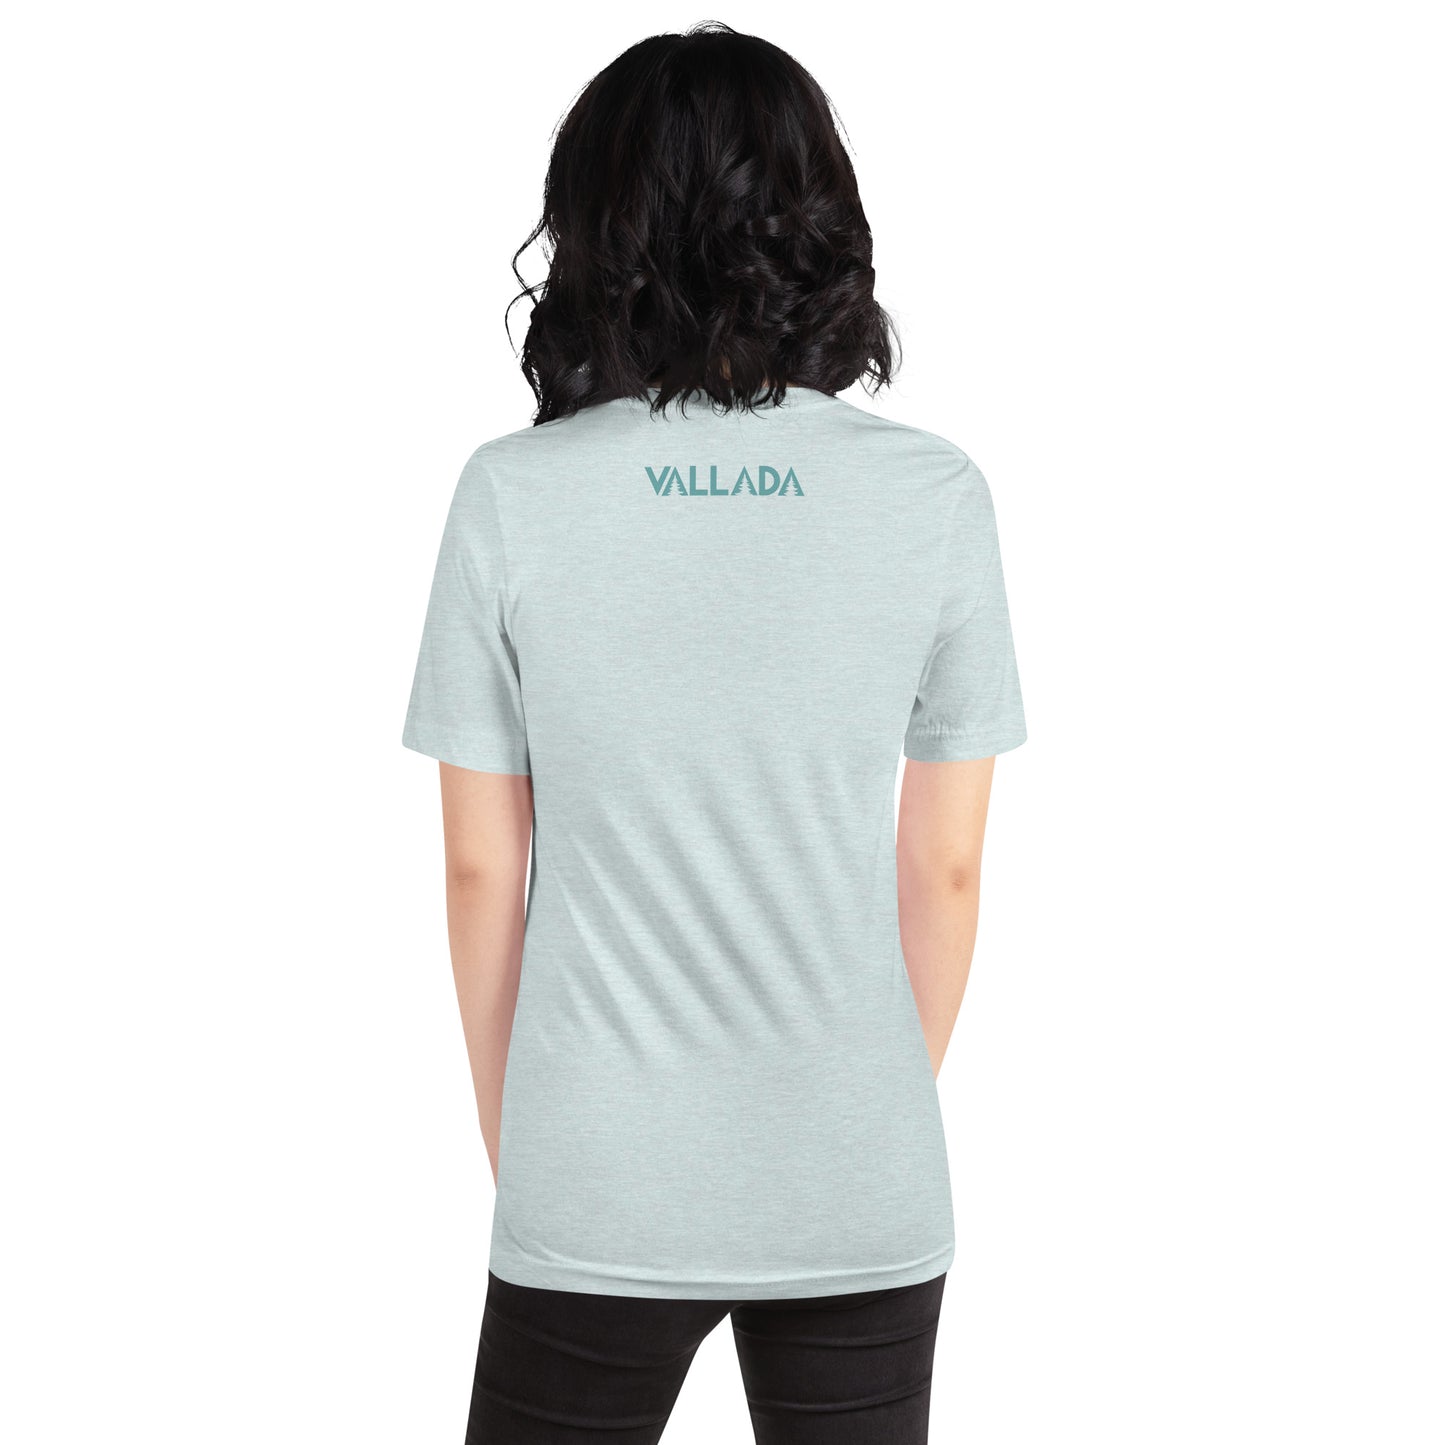 Diese Wanderfreundin trägt ein hellbblaues Damen T-Shirt aus der Säntis-Collection von Vallada. Sie steht mit dem Rücken zur Kamera, so dass wir das Vallada-Logo sehen.